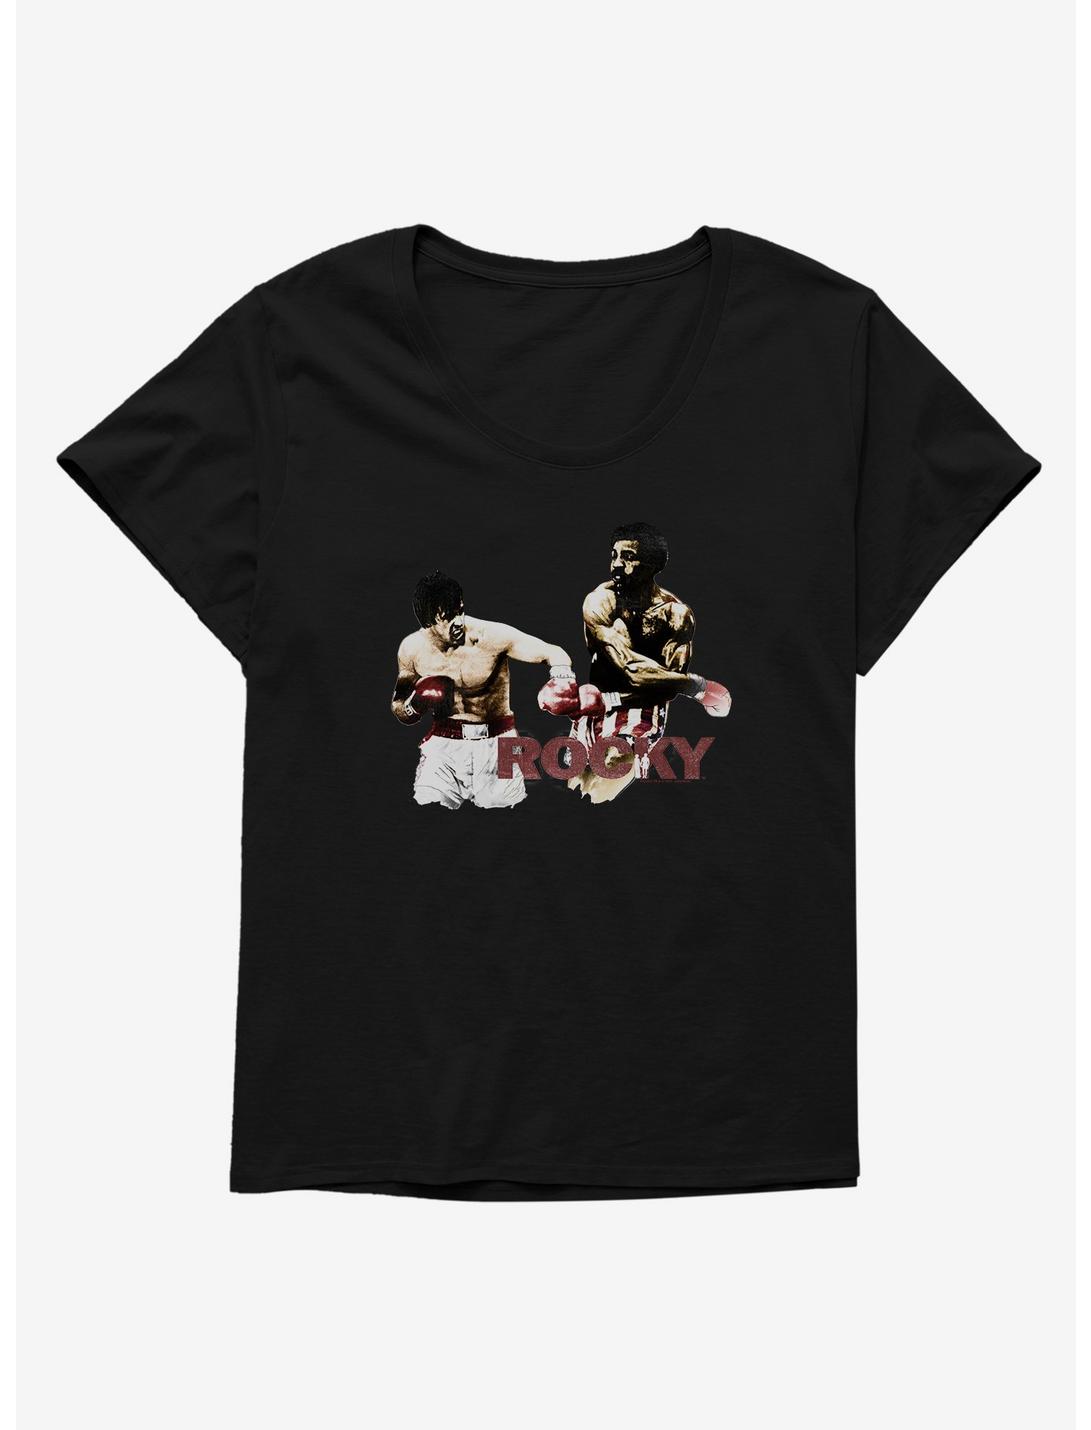 Rocky Vs. Apollo Creed Fight Scene Womens T-Shirt Plus Size, , hi-res